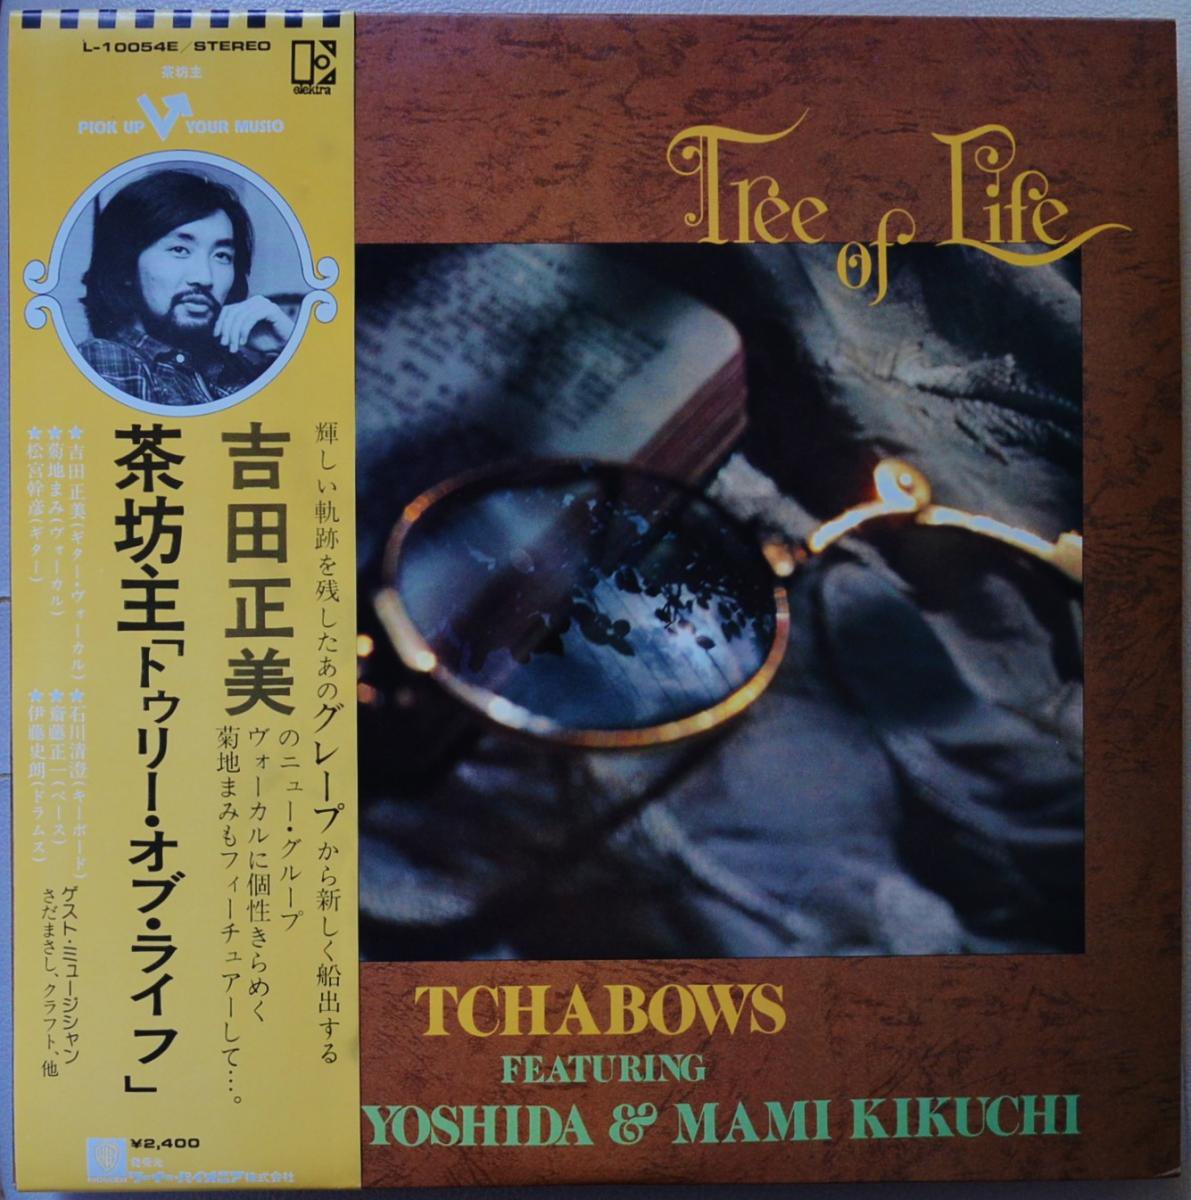 TCHABOWS FEATURING MASAMI YOSHIDA & MAMI KIKUCHI ( & ˷) / TREE OF LIFE (LP)